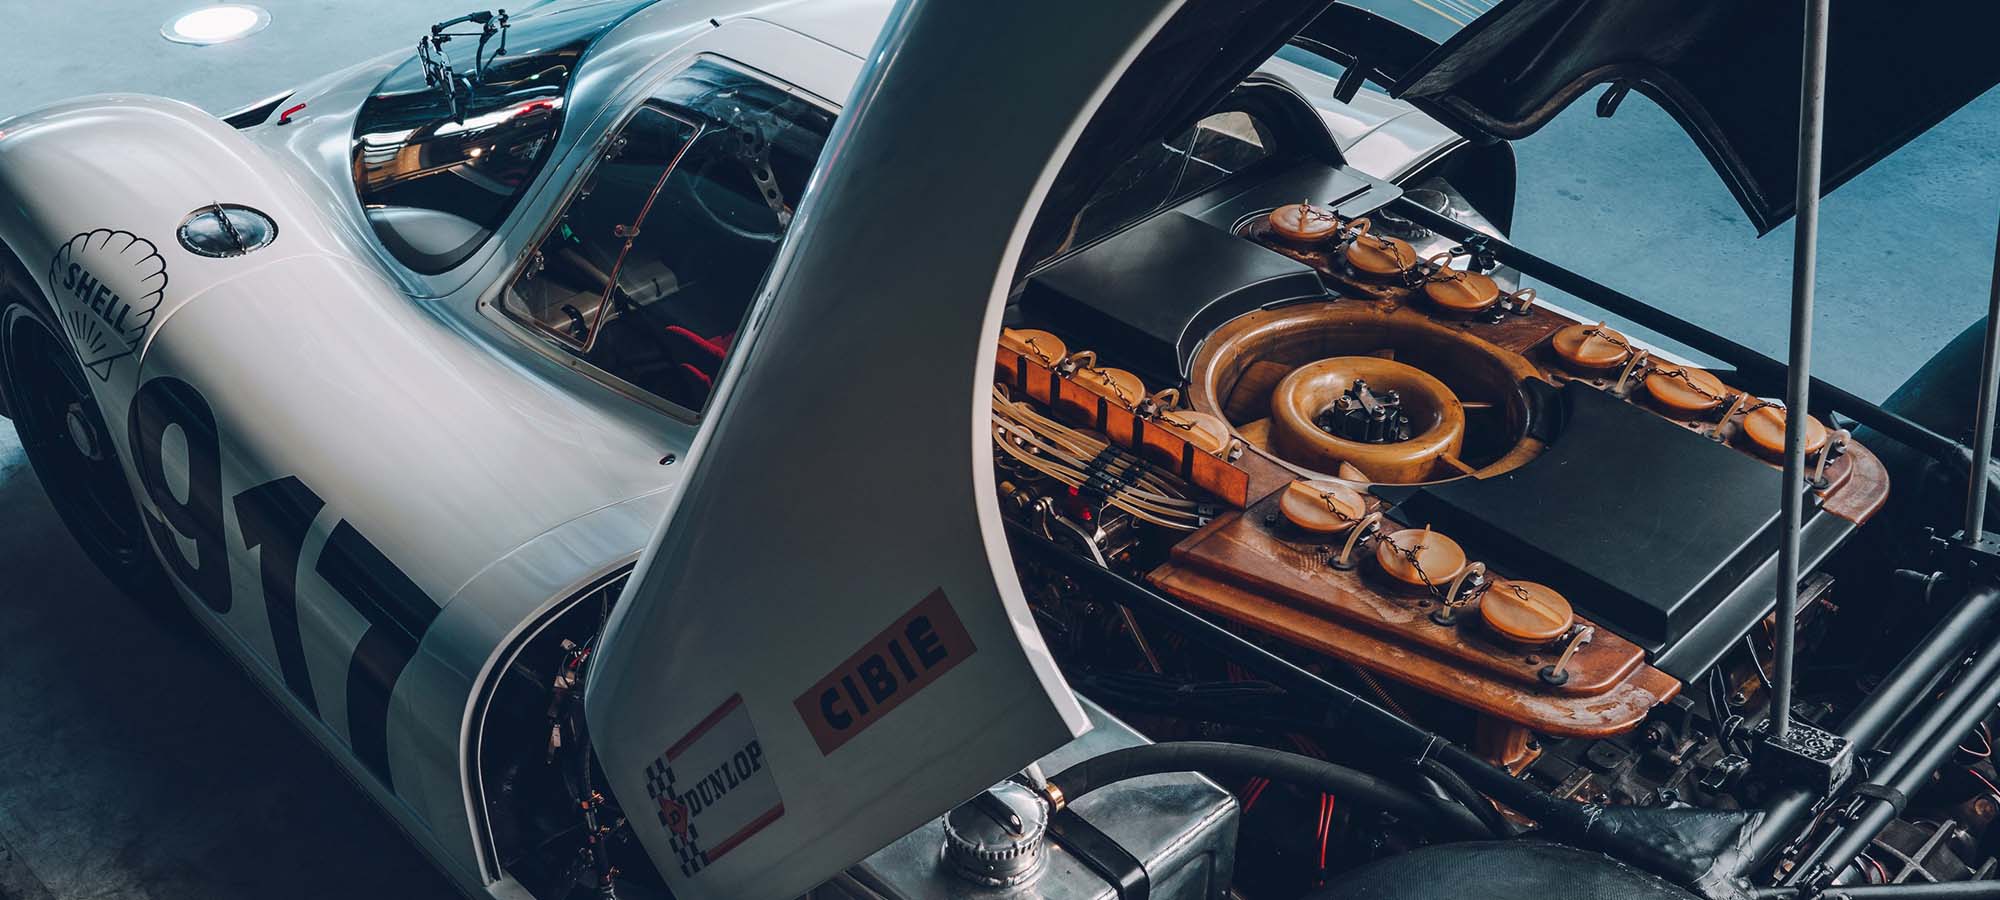 Race Engine of the Week - Porsche Flat 12